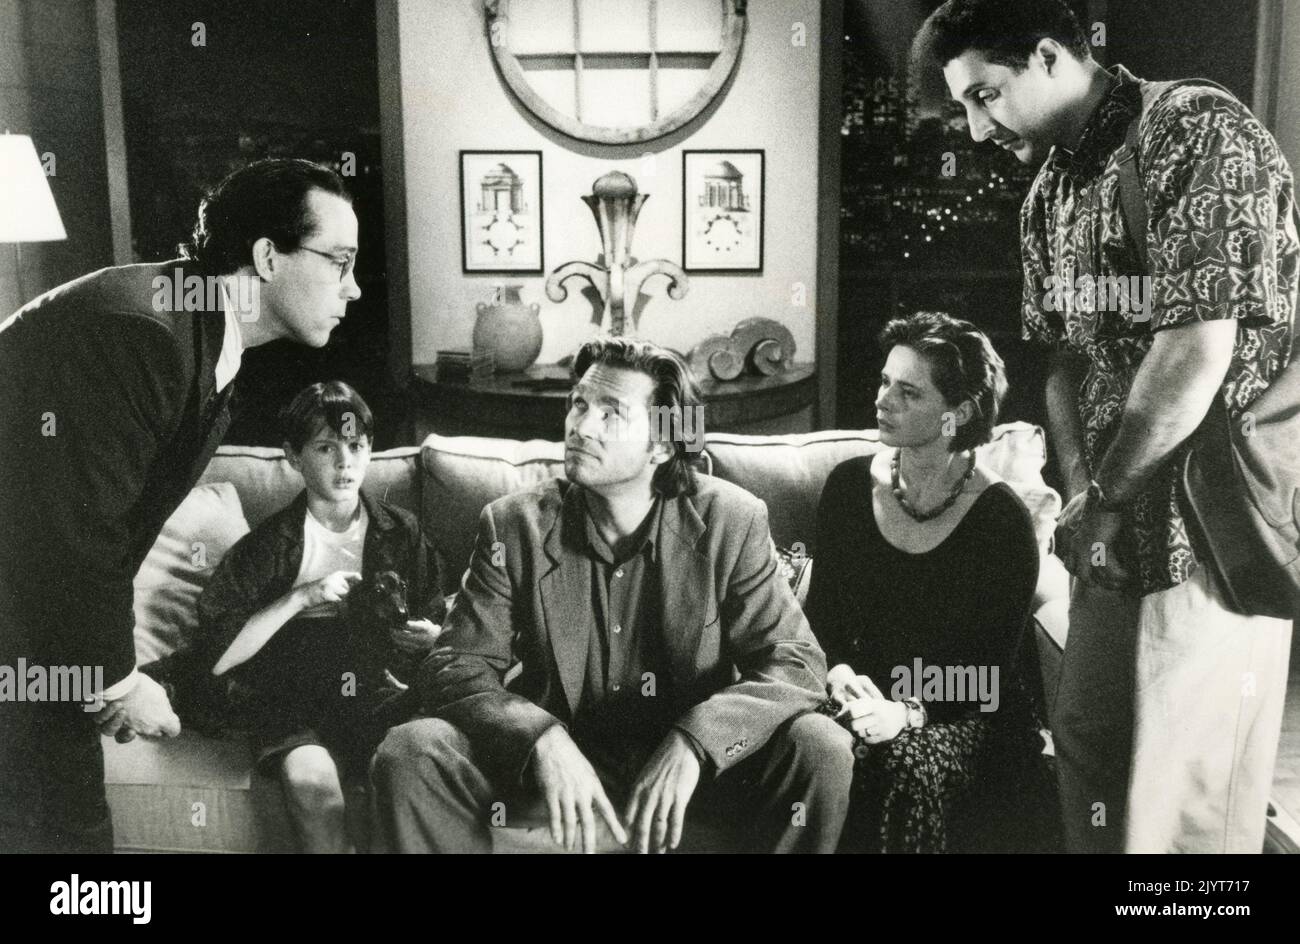 Les acteurs américains Tom Hulce, Jeff Bridges, Isabella Rossellini et John Turturro dans le film Fearless, USA 1993 Banque D'Images